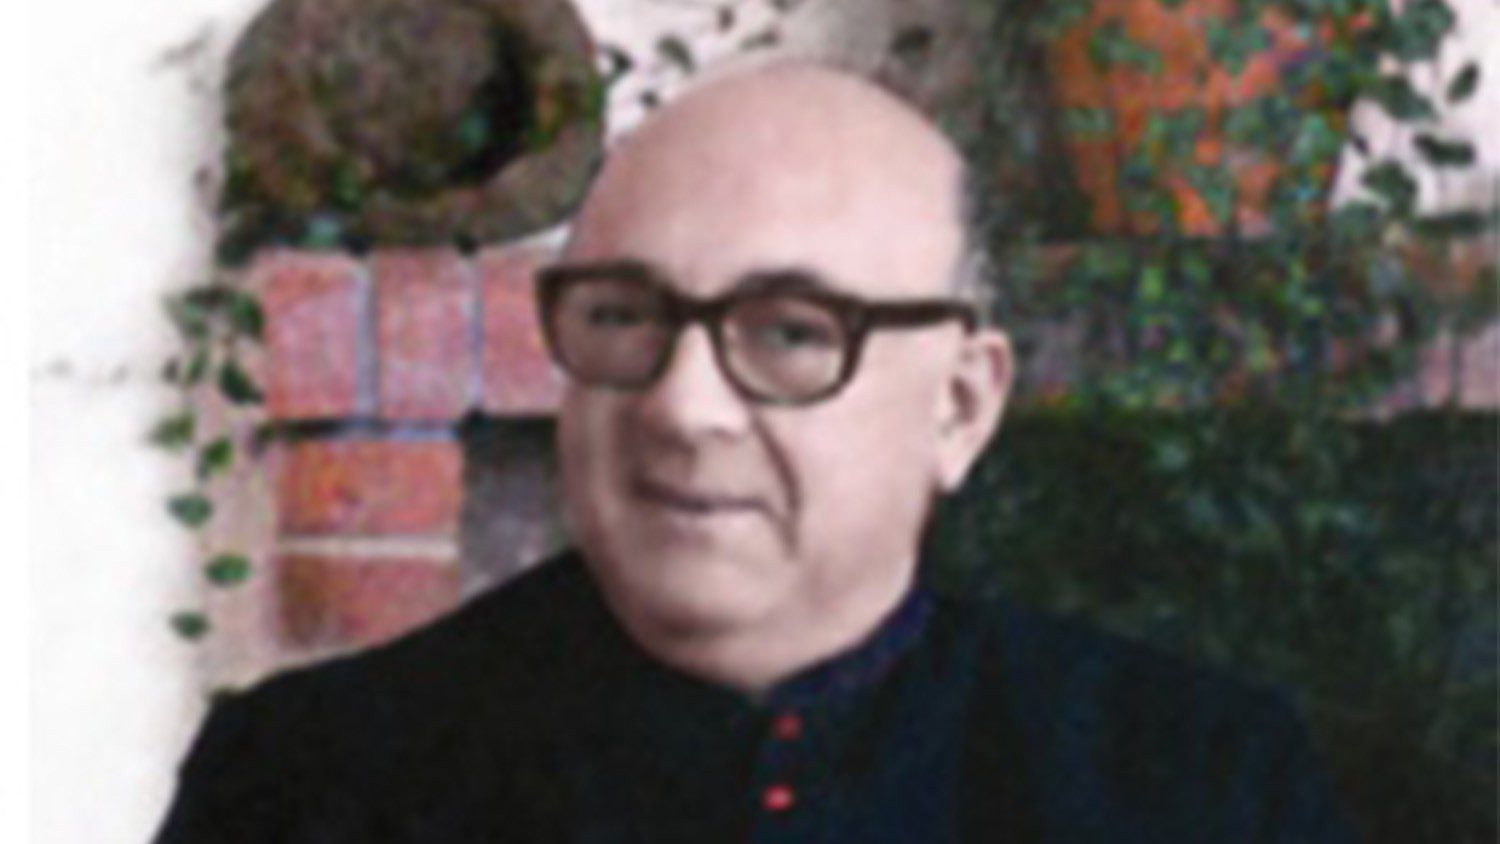 Mgr Carlos Ponce de León, évêque de San Nicolás, en Argentine a été tué en 1977 | DR